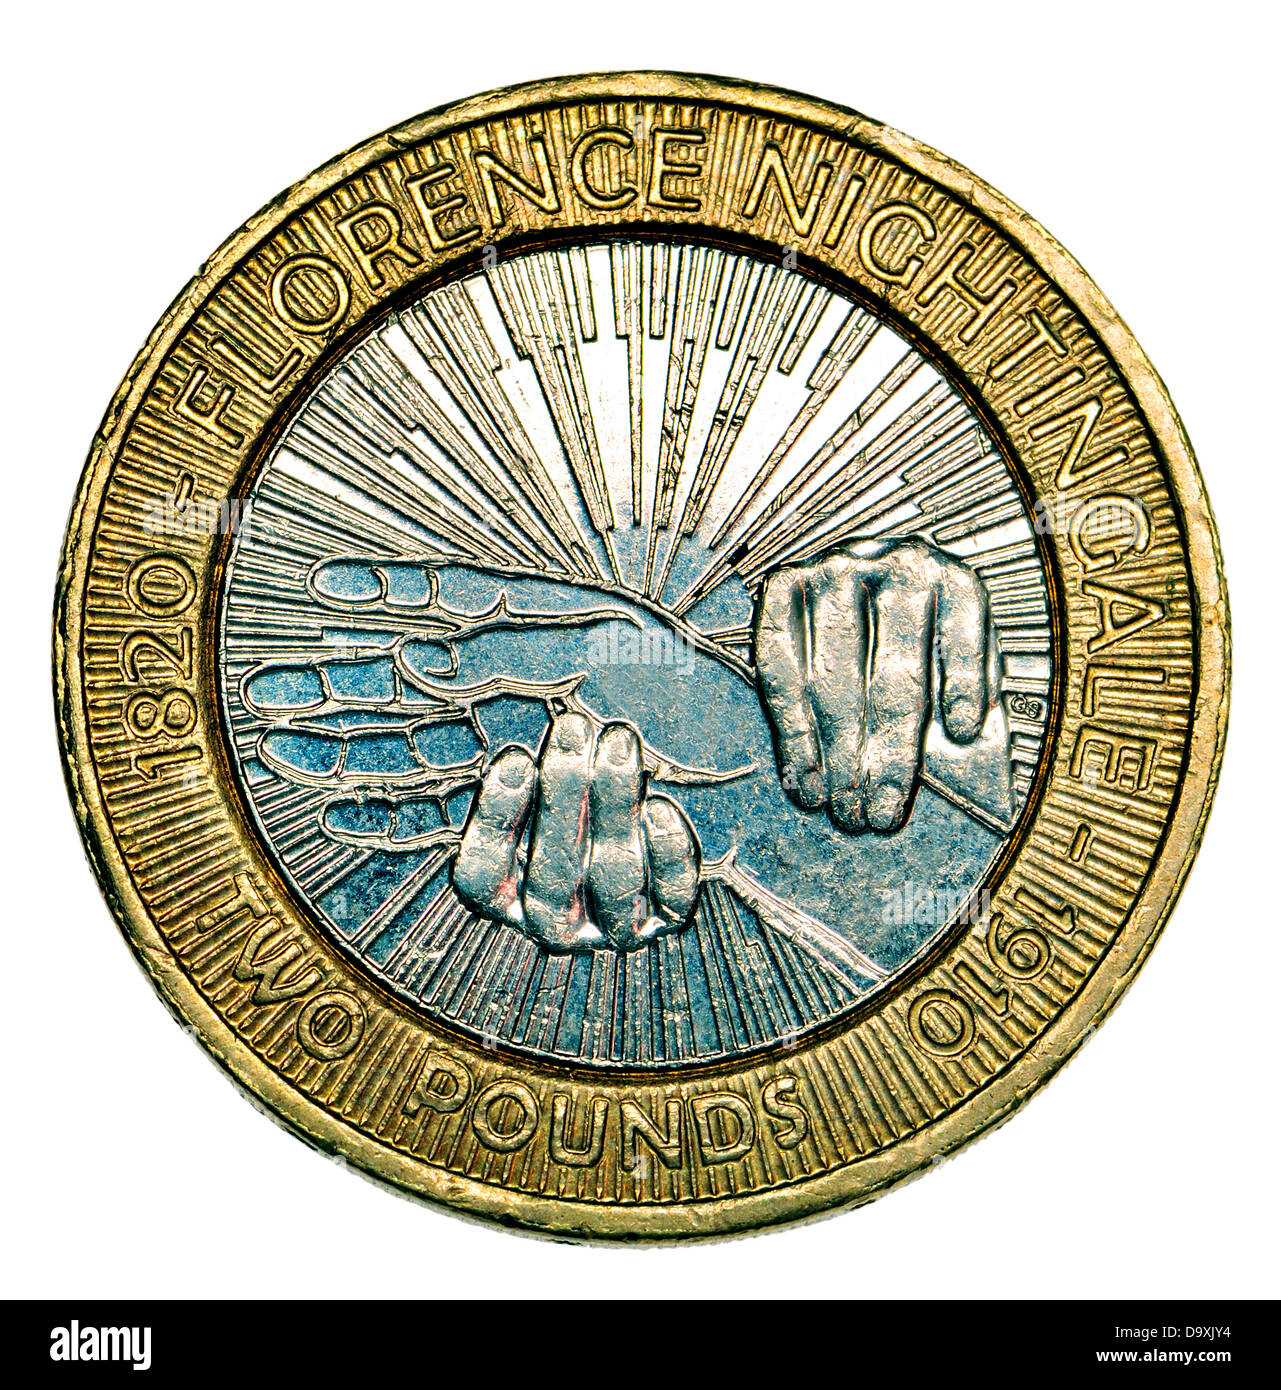 Britische £2 Münze - 2010 - 100. Todestag von Florence Nightingale. Designed by Gordon Sommer Stockfoto